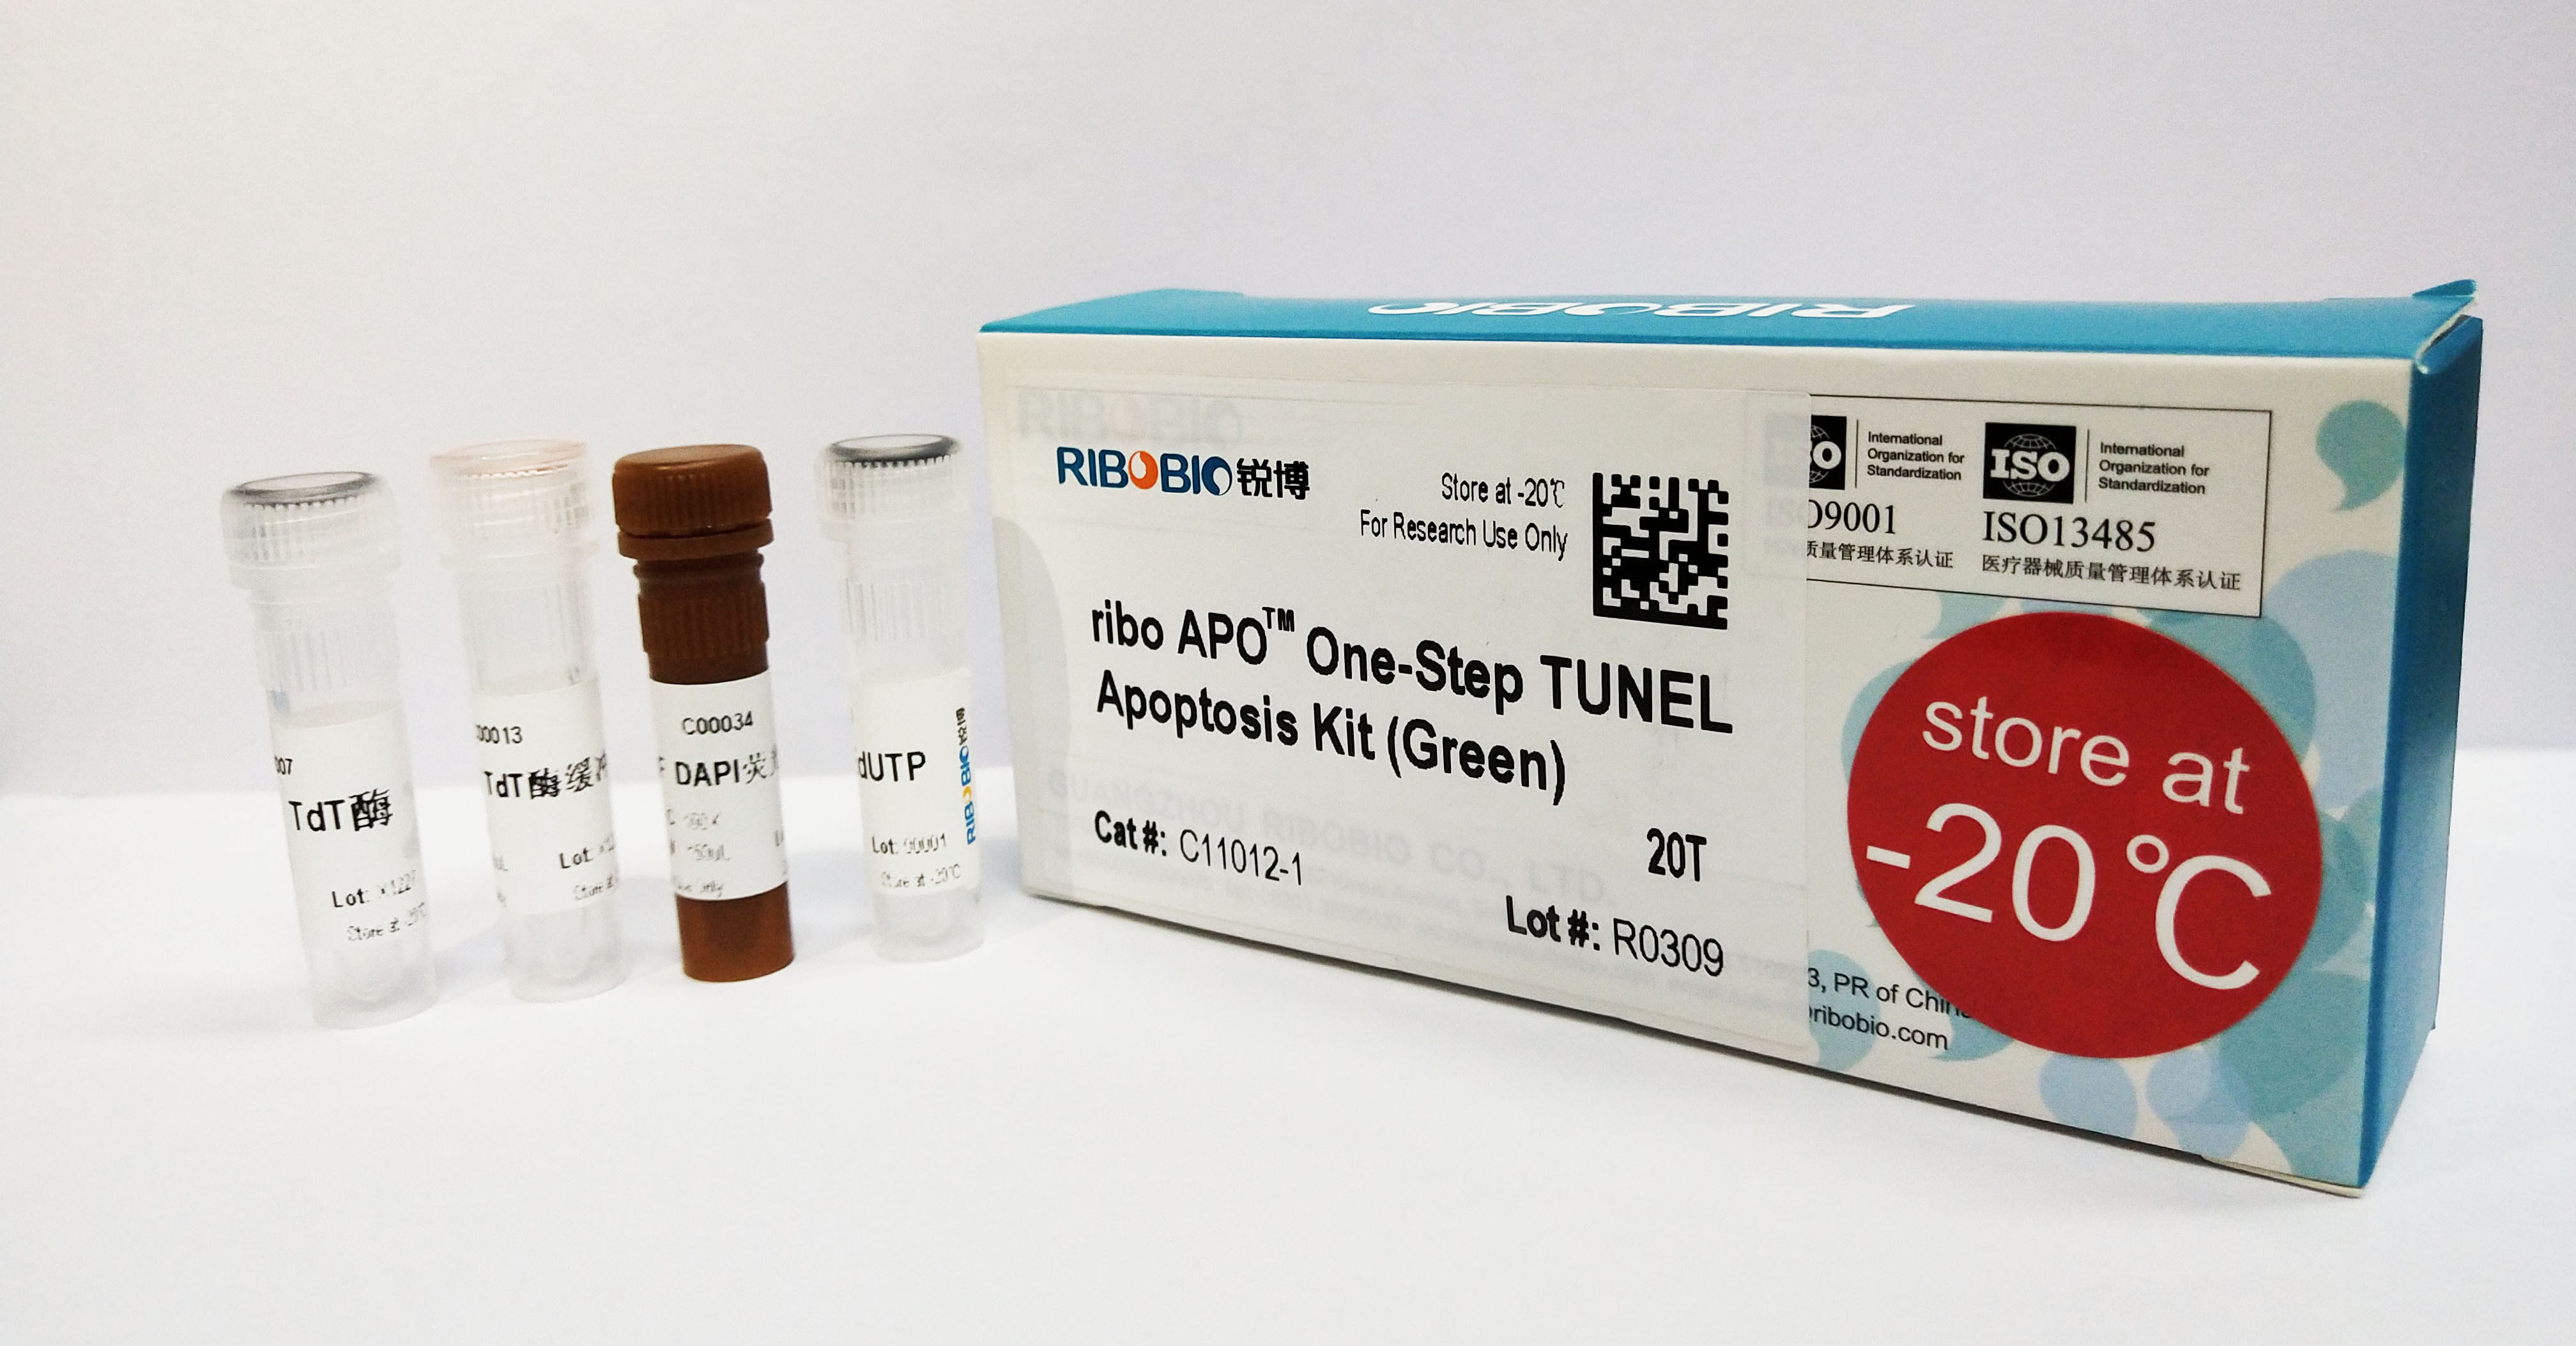 riboapo one-step tunel apoptosis kit (green)(20t)